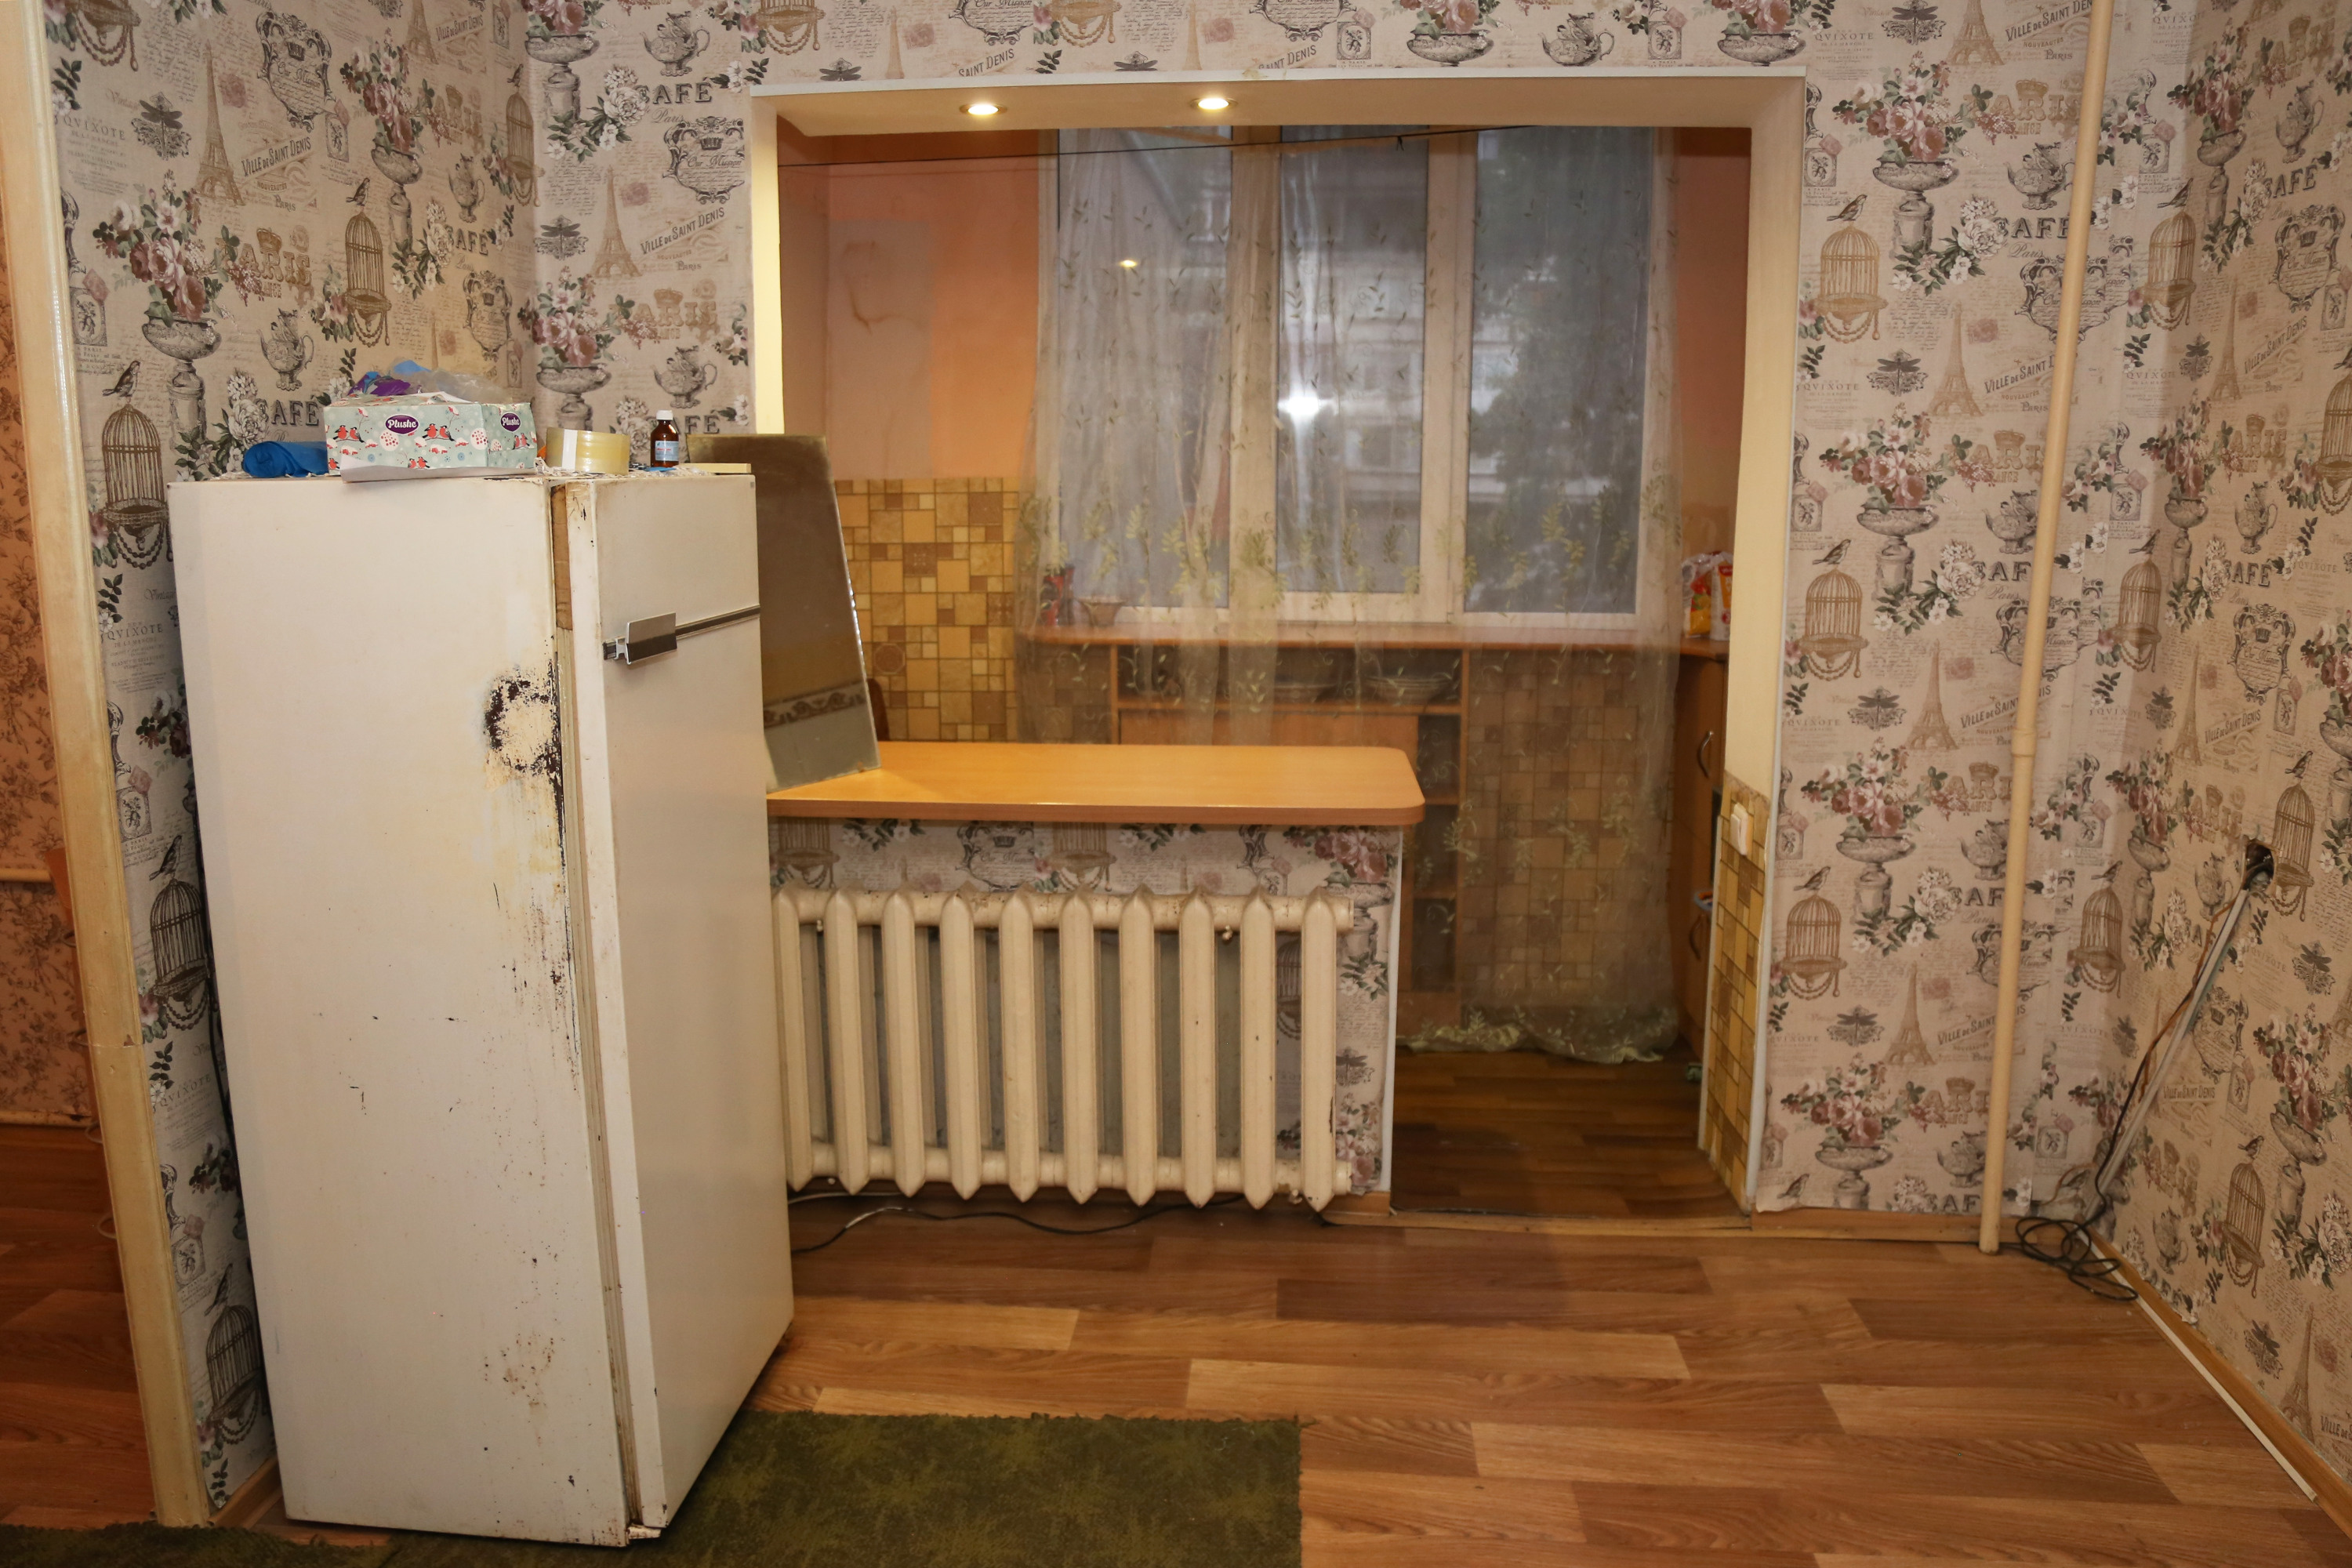 Эту квартиру снимал Виталий Бережной до середины августа. По официальной информации Следственного комитета, тело Насти Муравьёвой мужчина хранил в холодильнике пансионата несколько дней